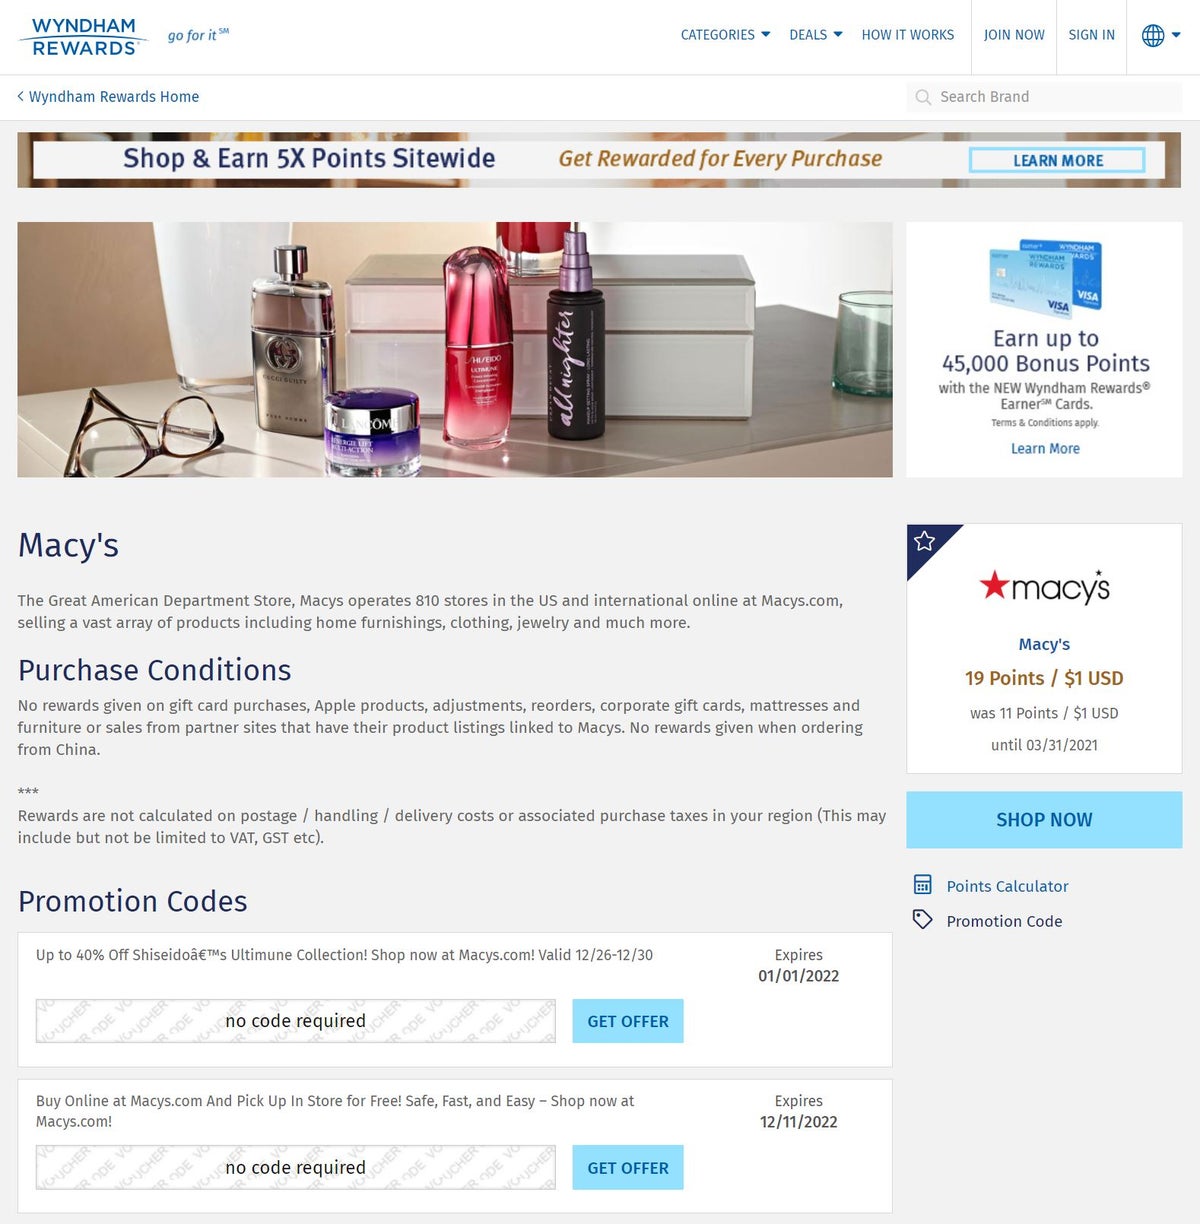 Wyndham Rewards Shopping Portal Retailer Page